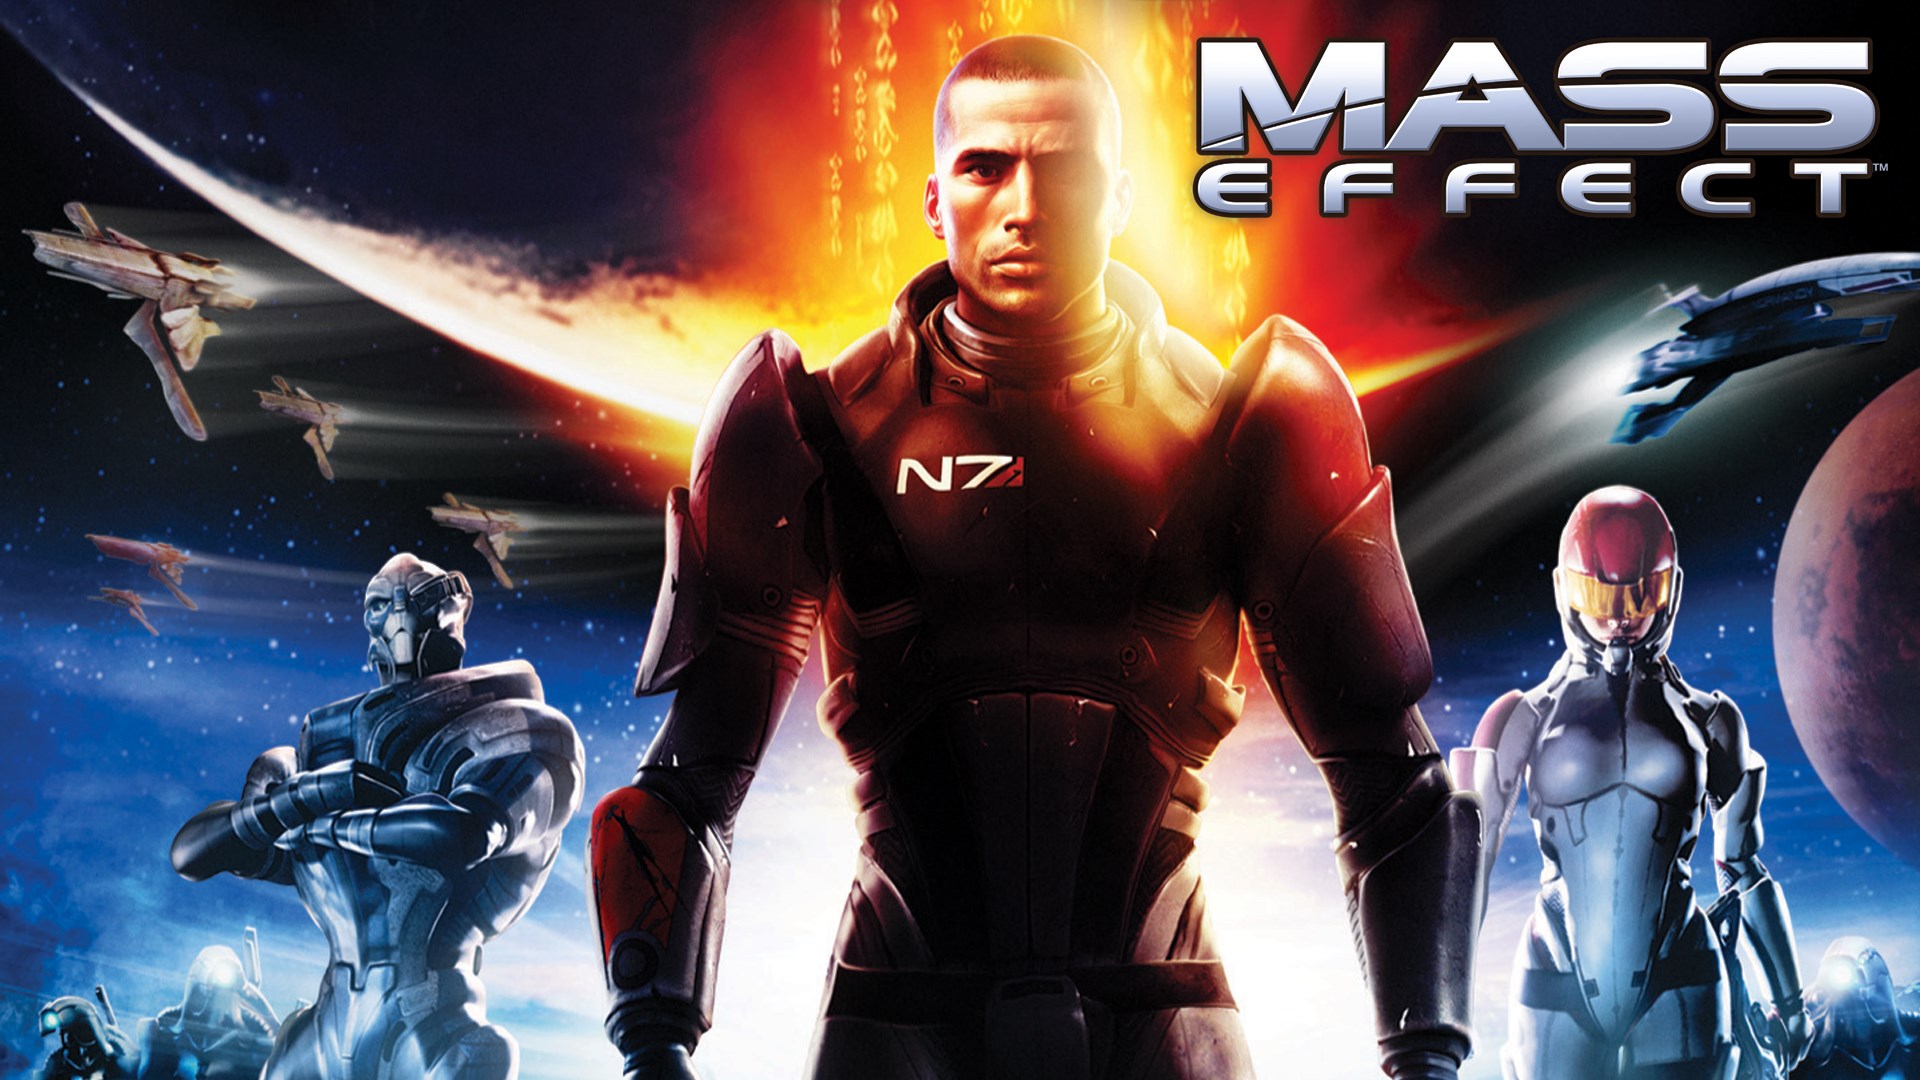 Buy Mass Effect Microsoft Store